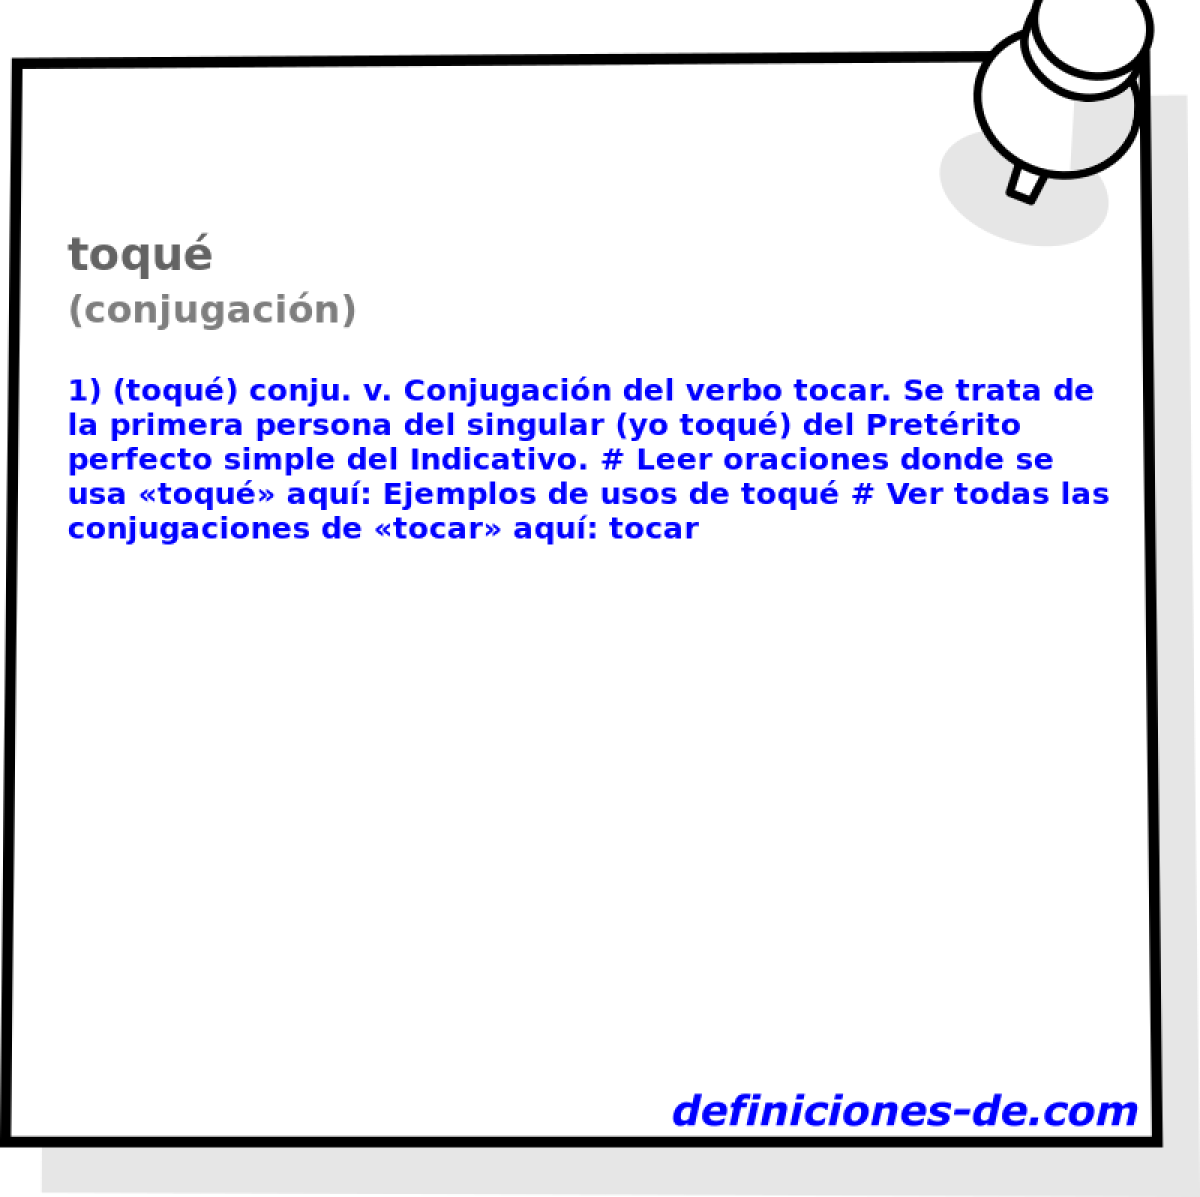 toqu (conjugacin)